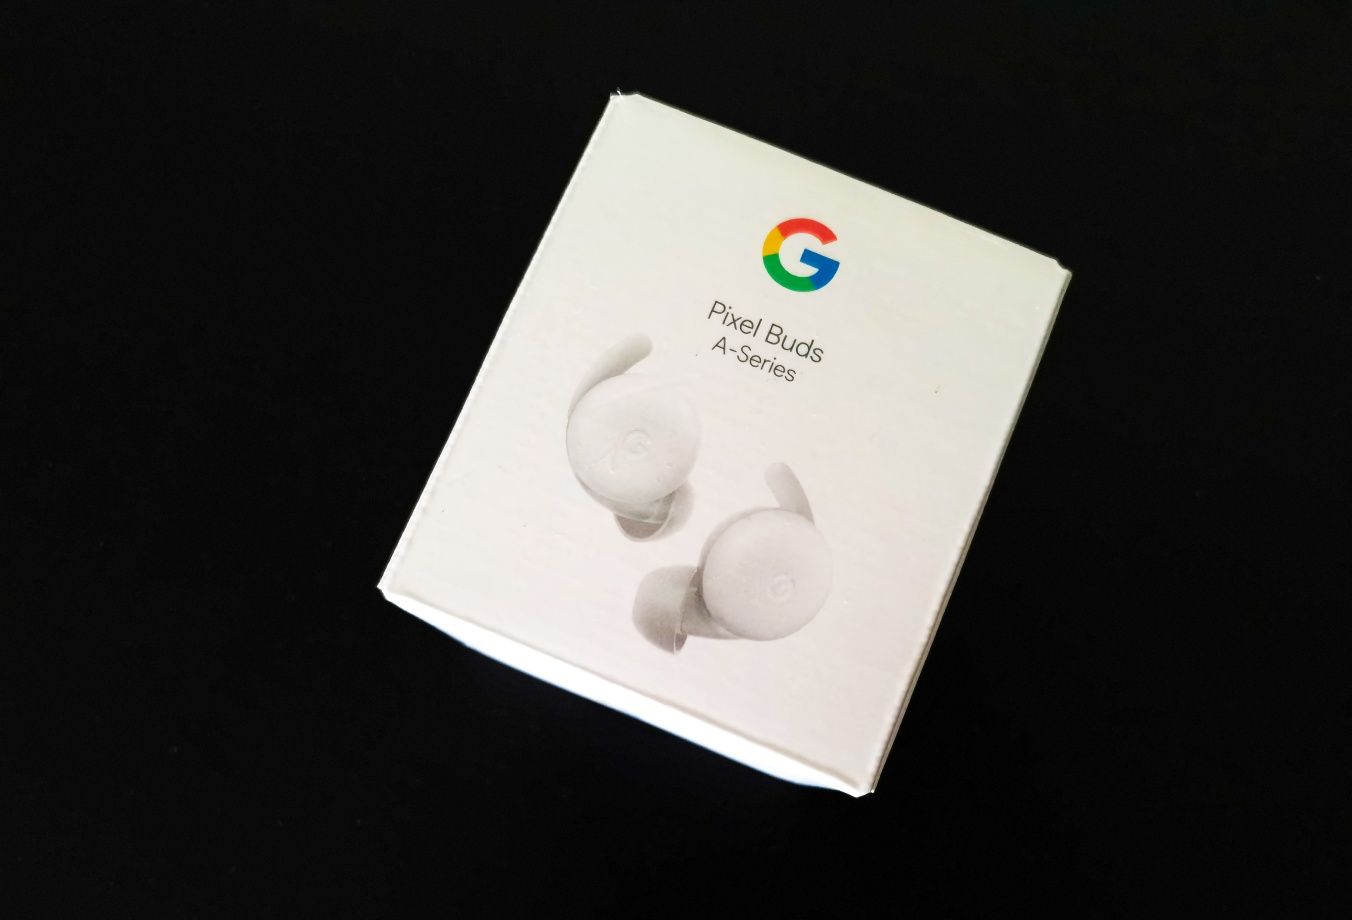 Google Pixel buds A-series